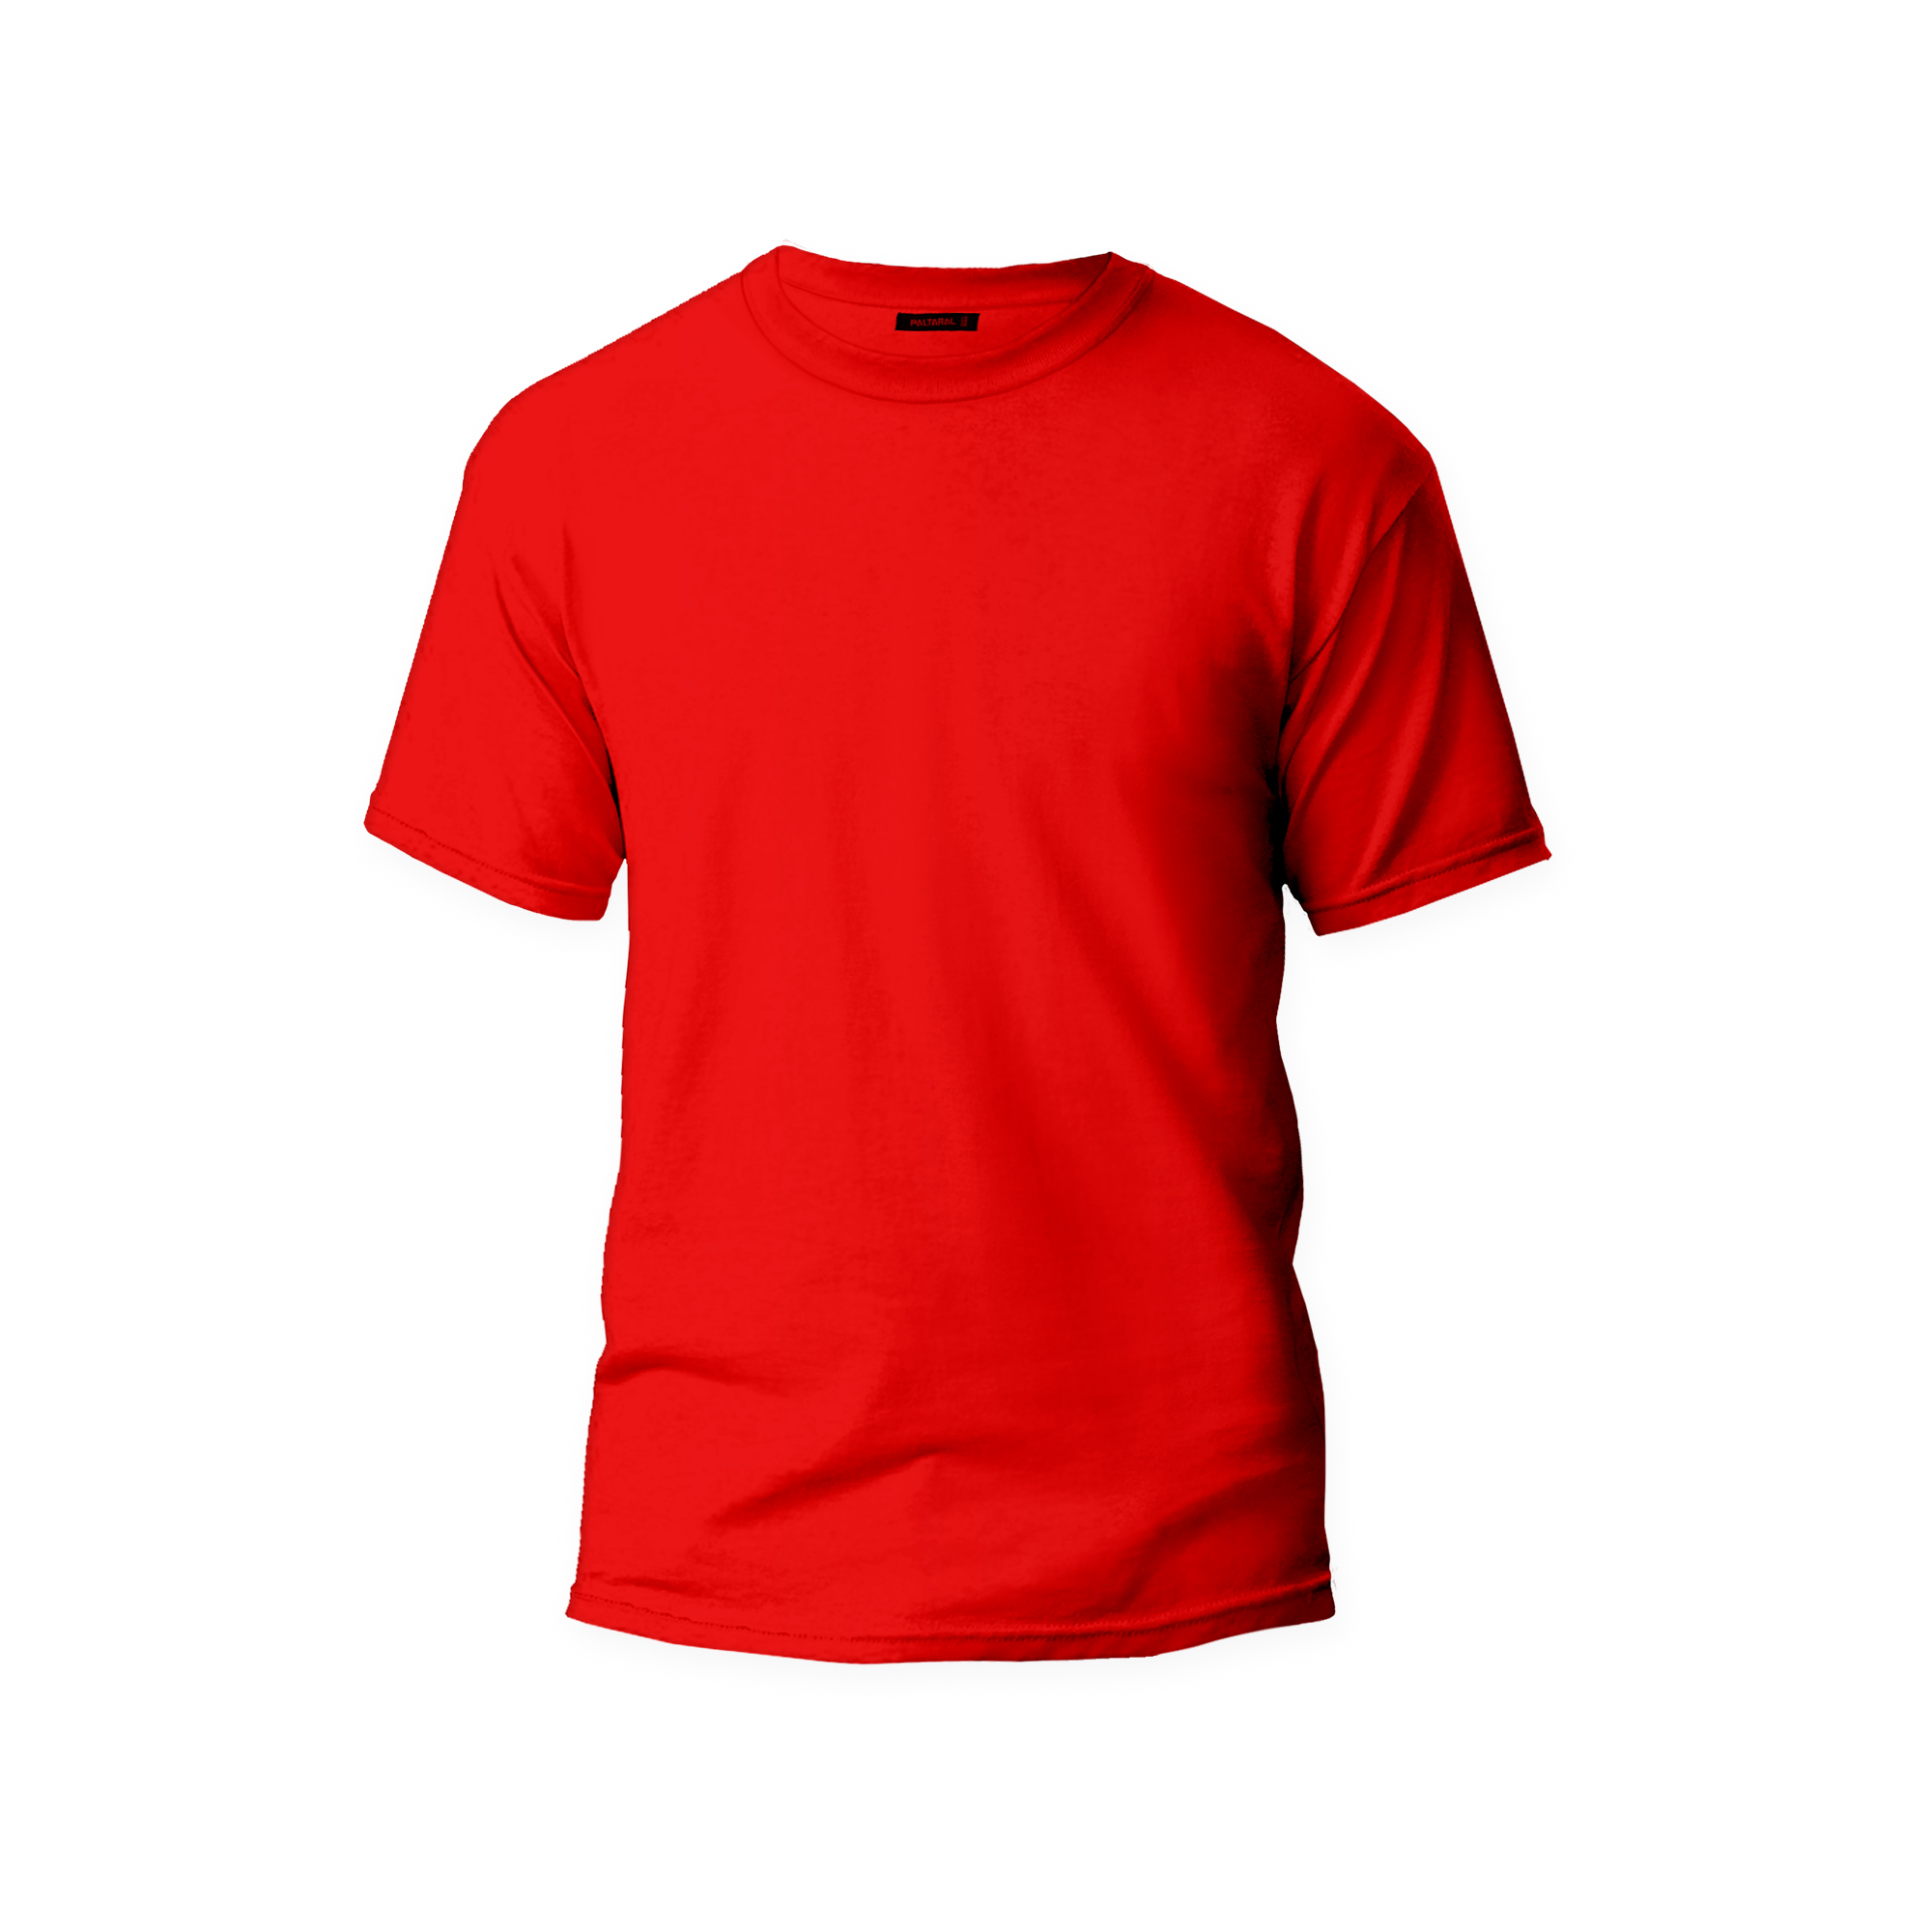 تیشرت آستین کوتاه مردانه مدل پالتارآل کد P004 رنگ قرمز